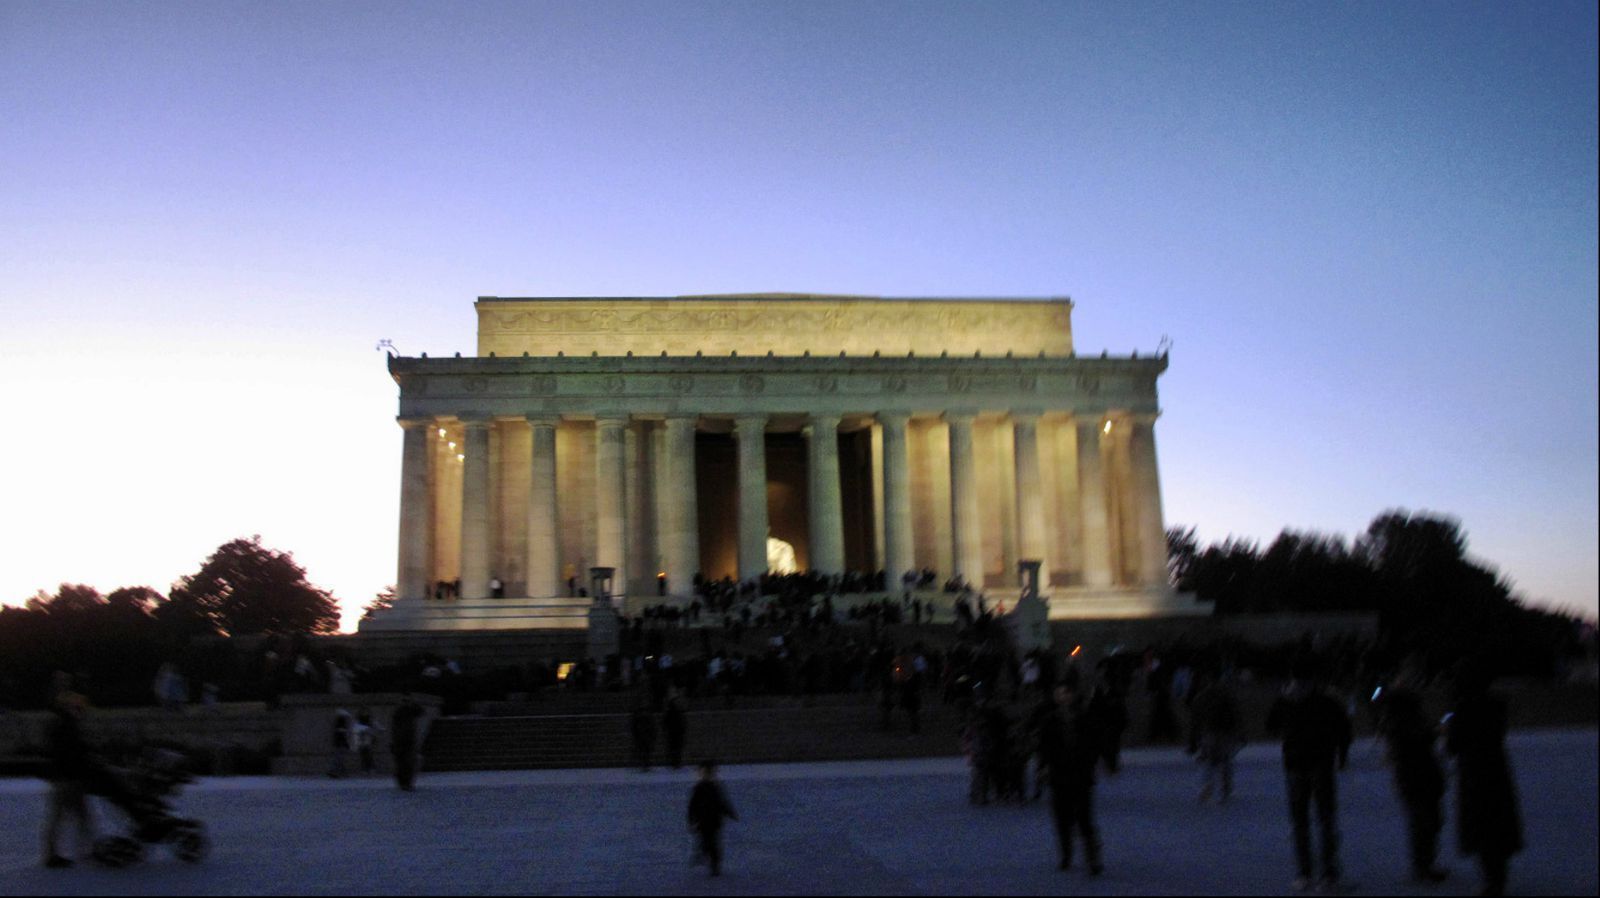 夕阳西下 纪念塔前充满了摄影家 幻想着留下那一刻的情景 林肯纪念堂